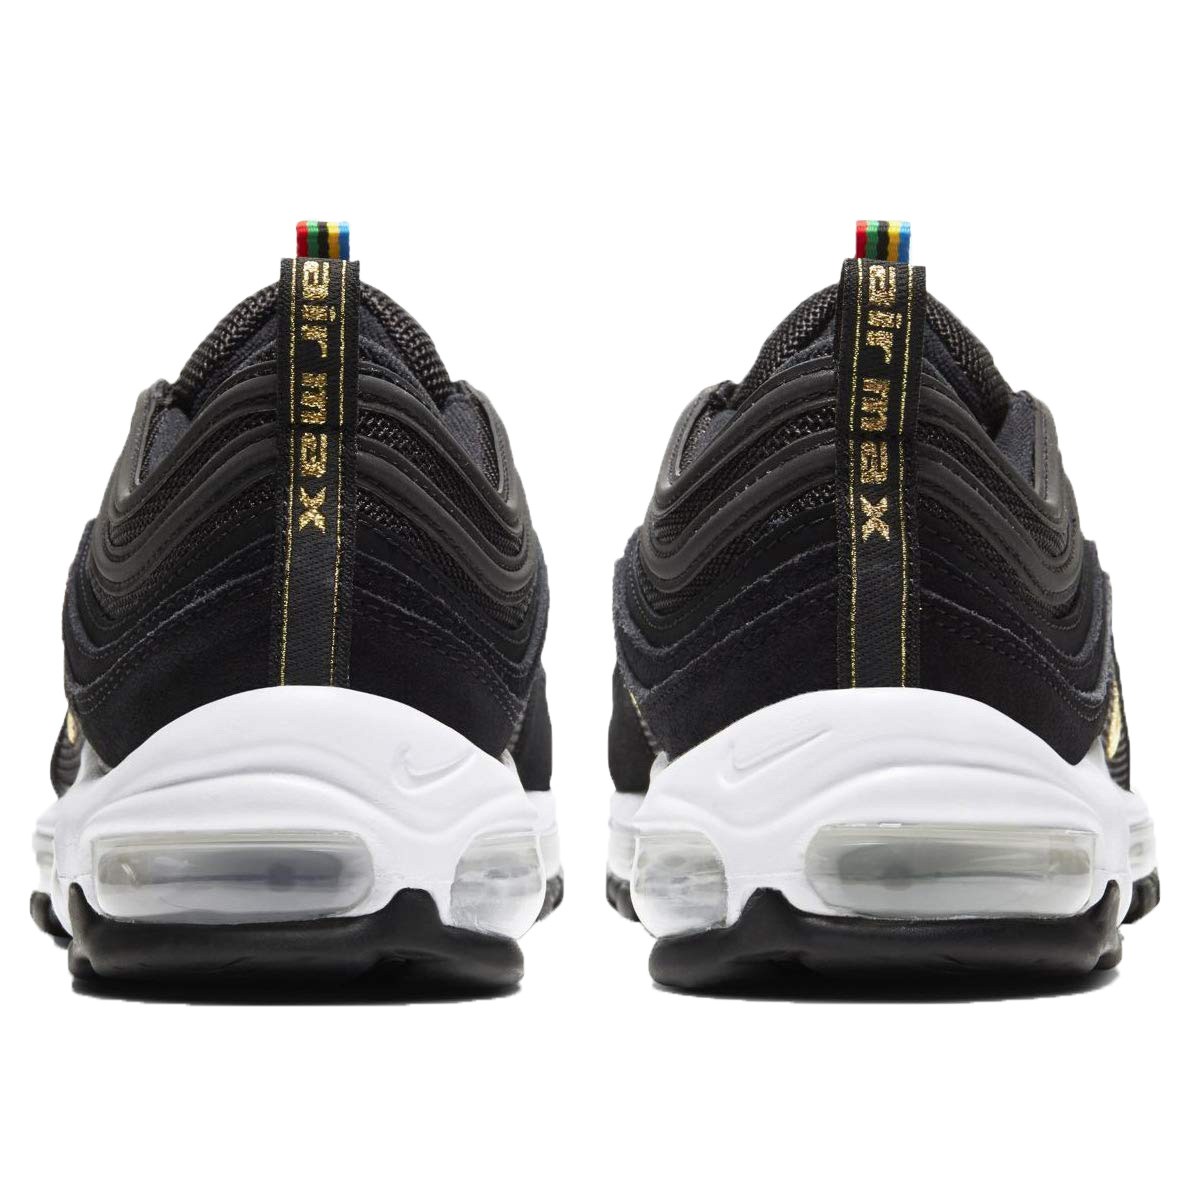 Nike Men's Air Max 97 QS "Olympic Rings" Pack Sneakers (7) - image 4 of 4